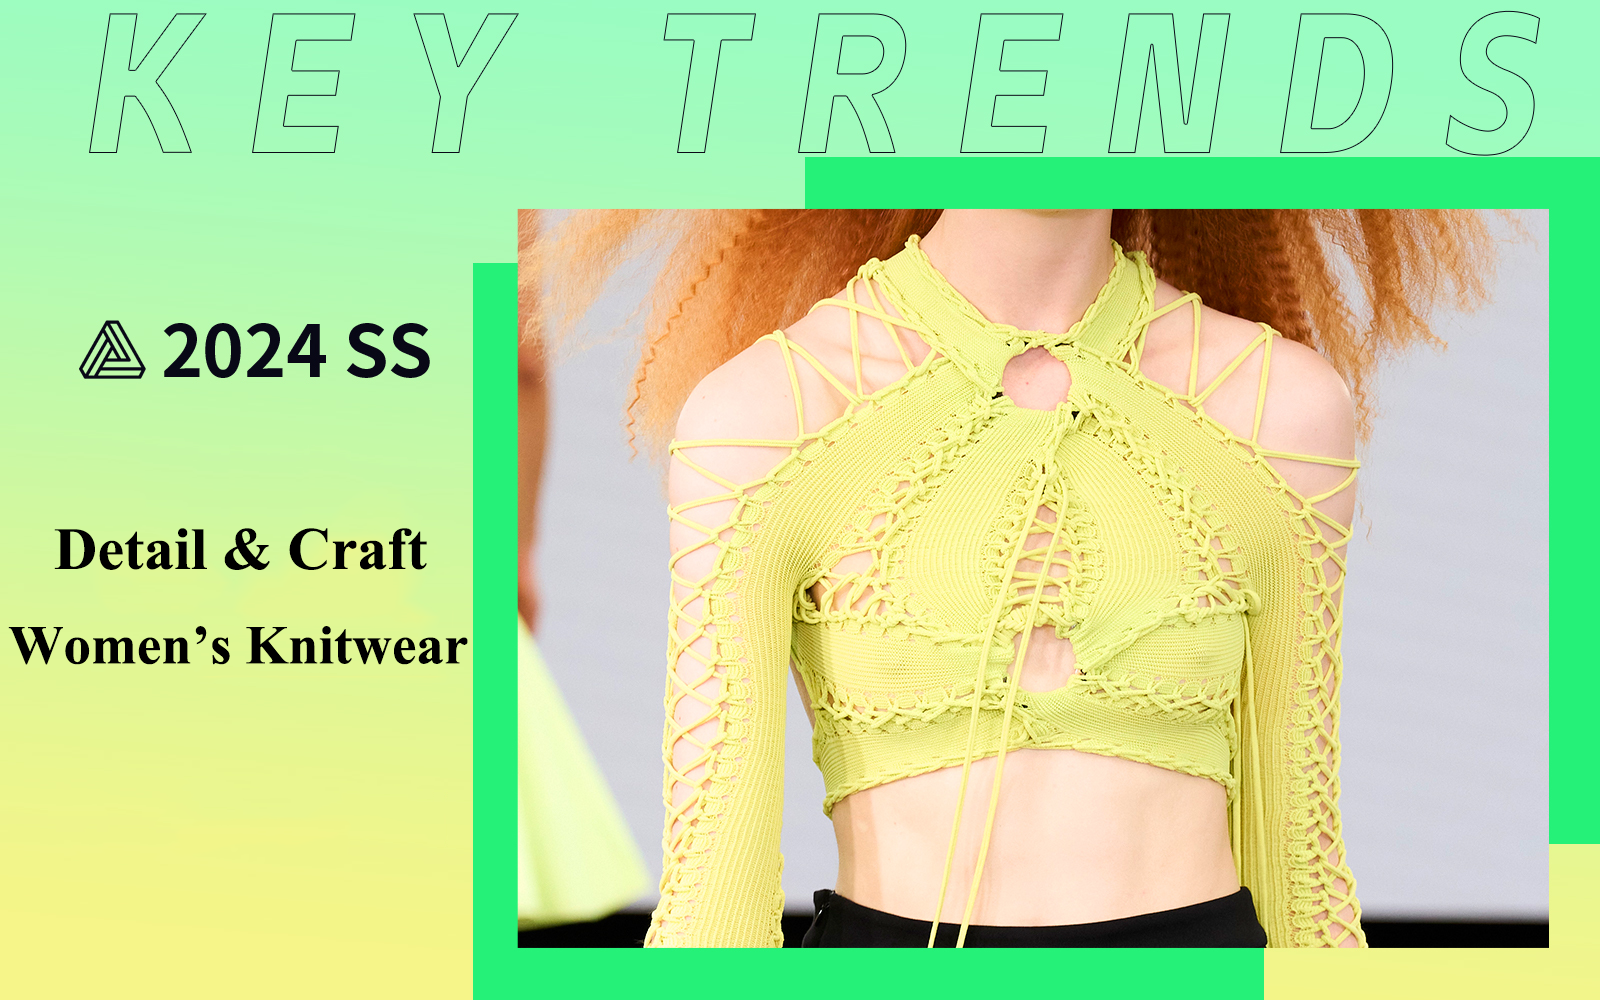 S/S 2024 Women's Knitwear Trend Keywords